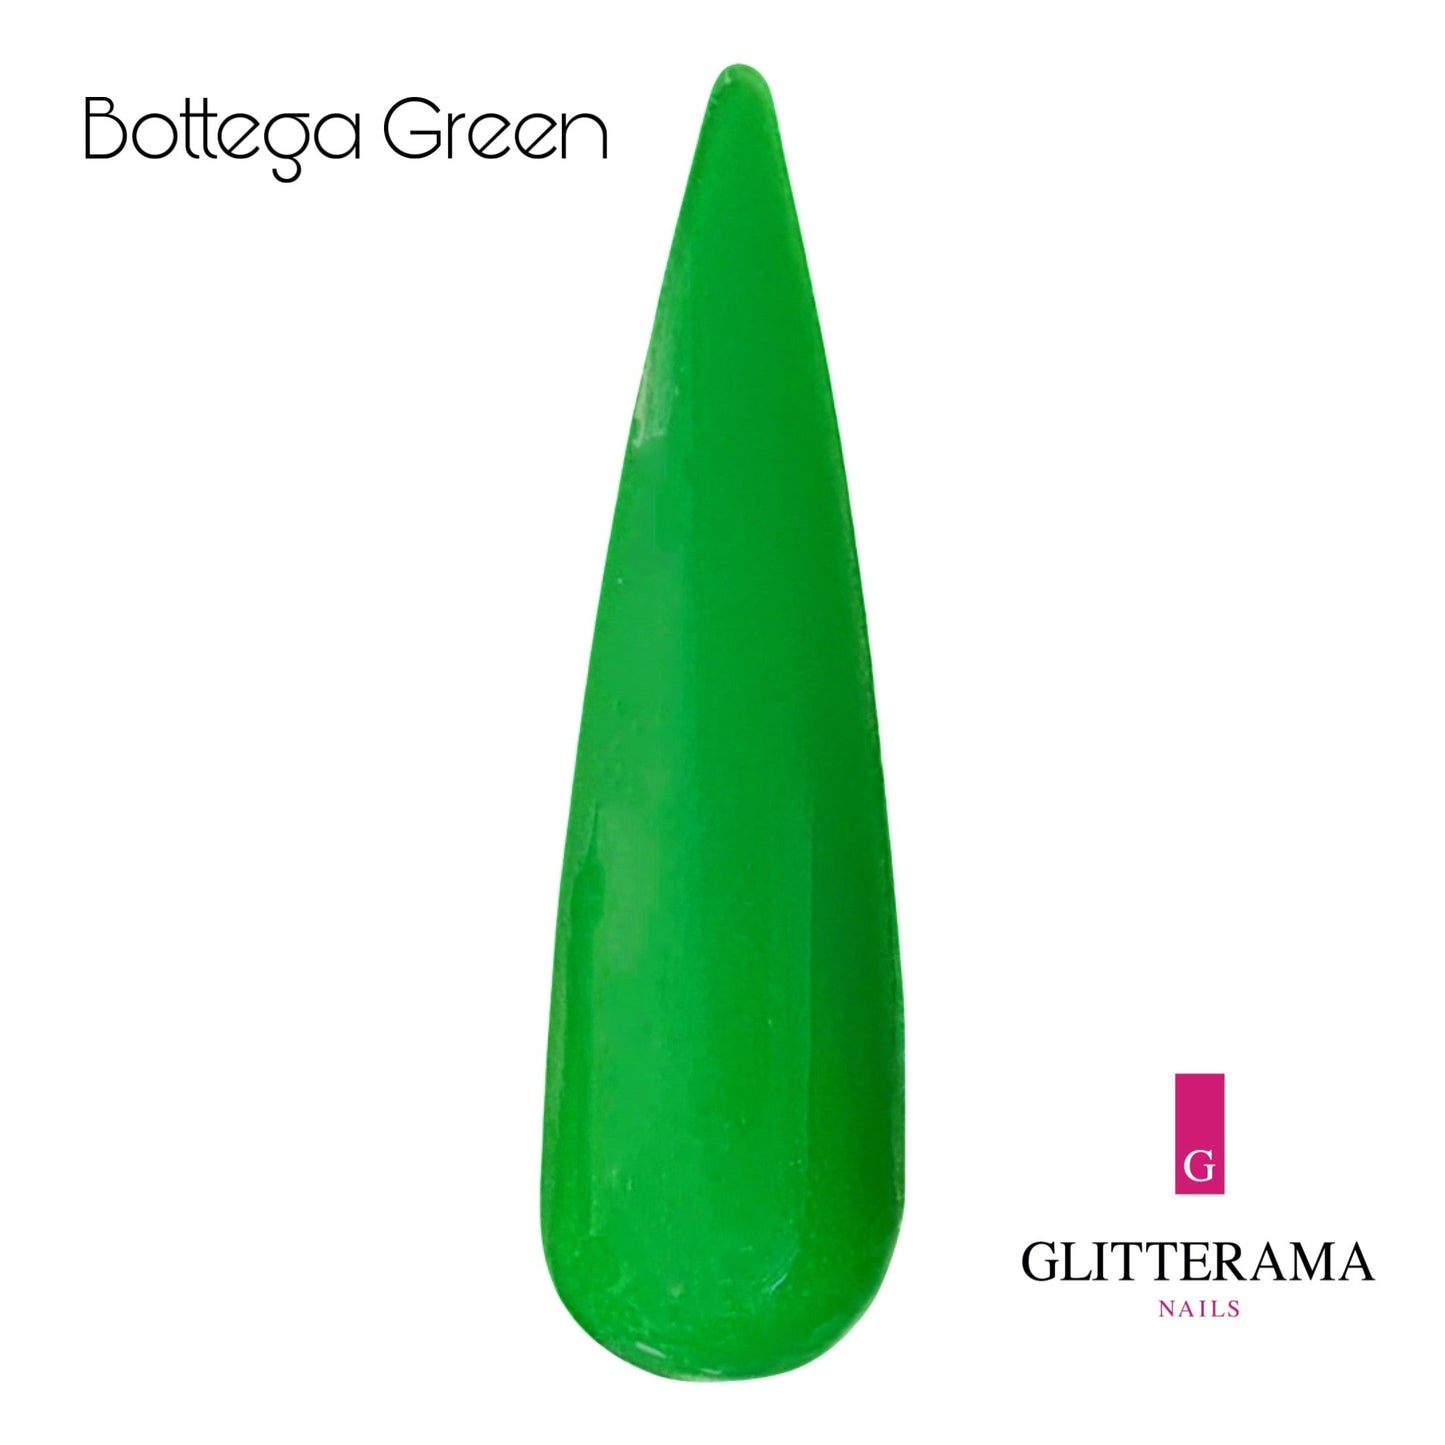 Bottega Green